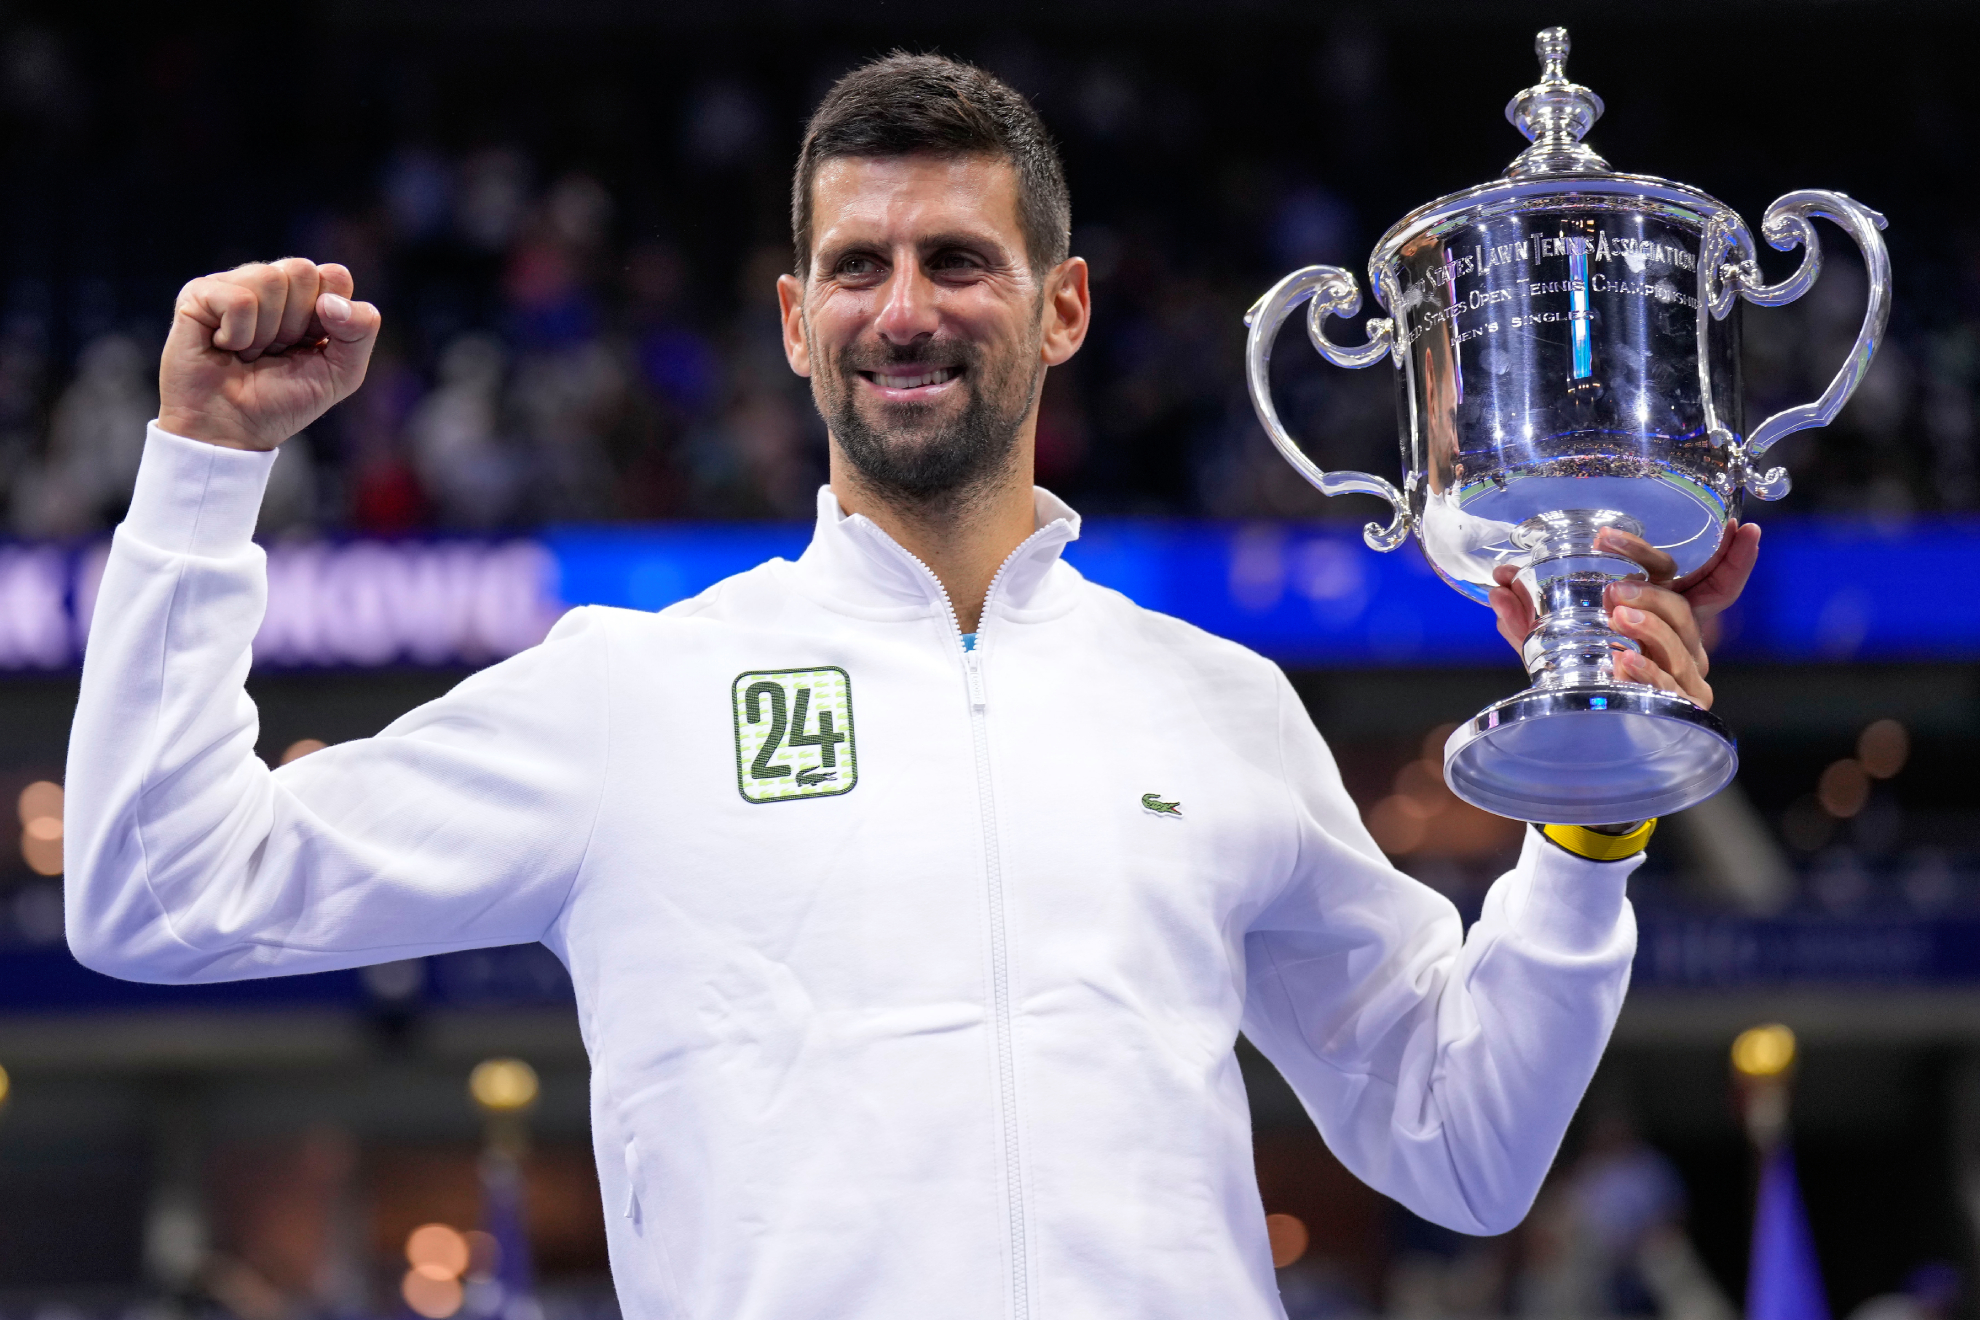 El exentrenador de Federer se rinde a Djokovic tras el US Open: "Me siento y aplaudo"